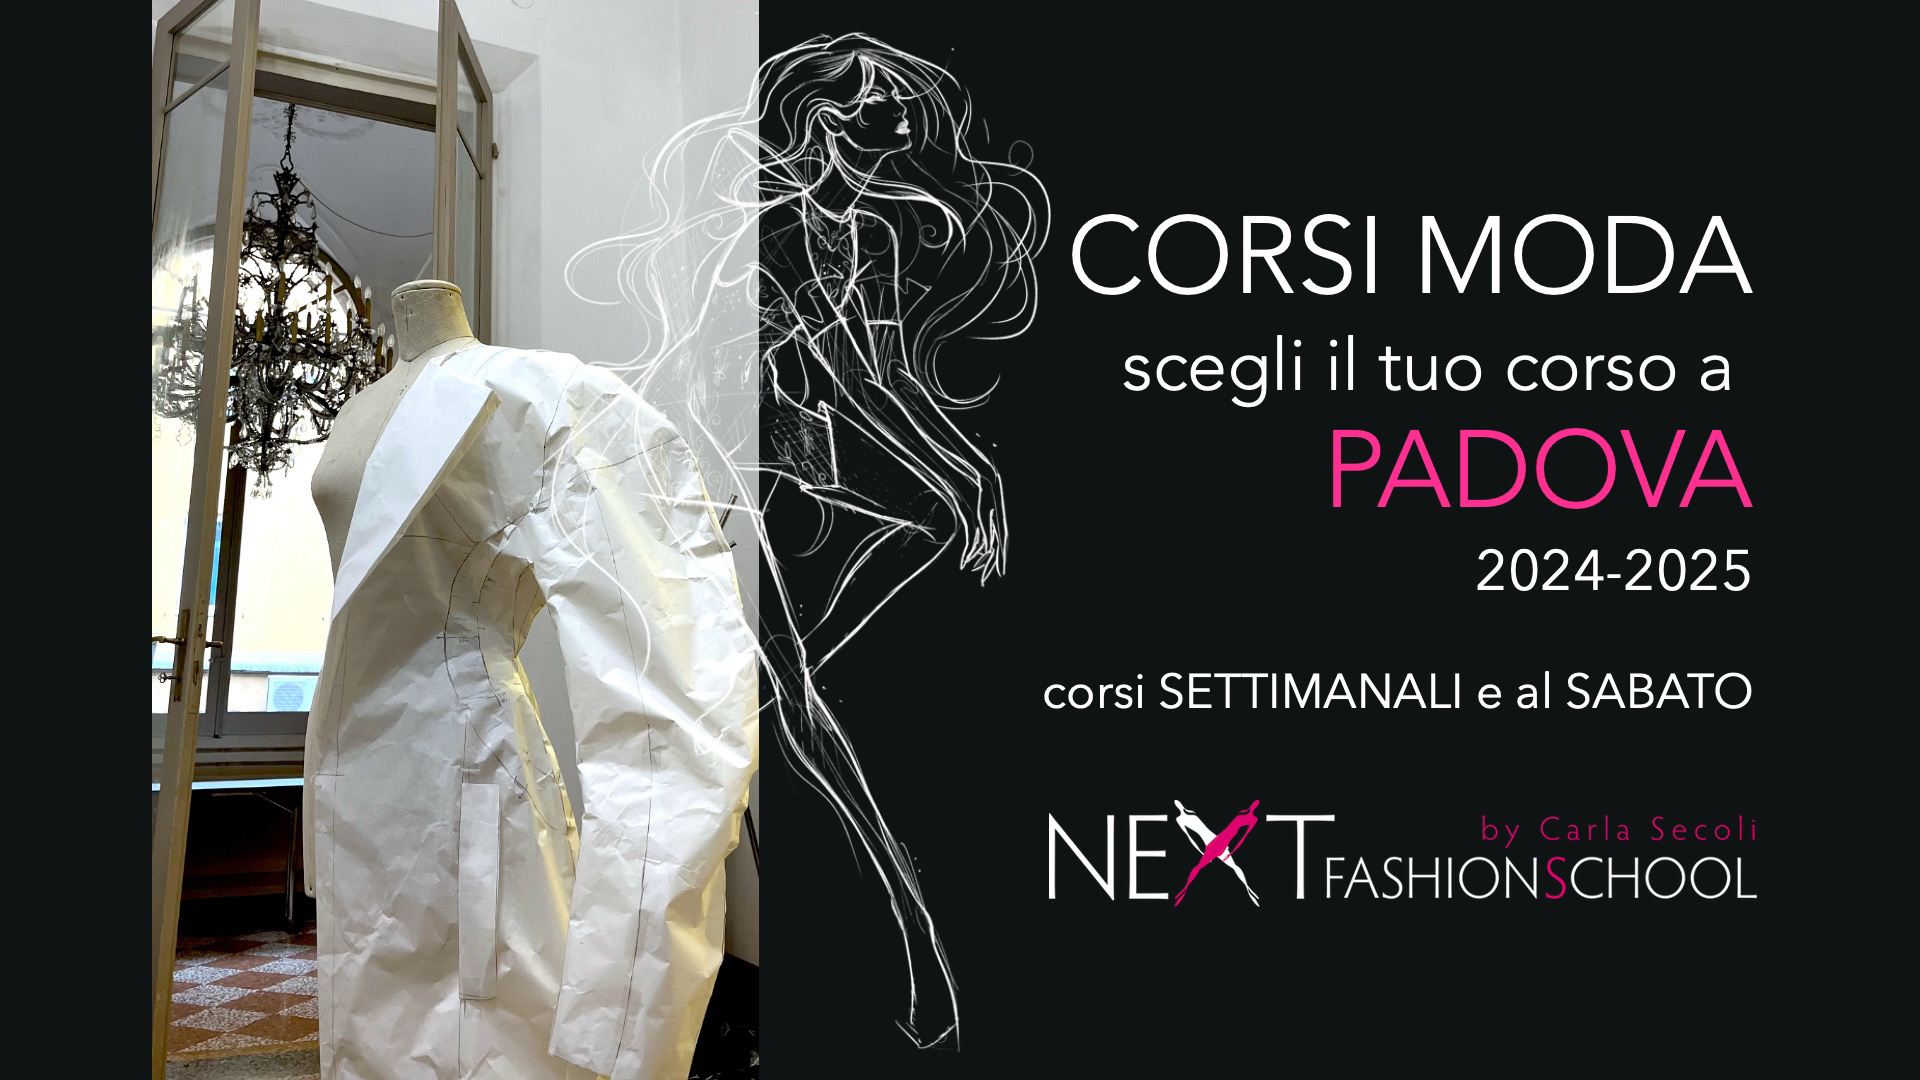 Corsi moda a Padova 2024-2025